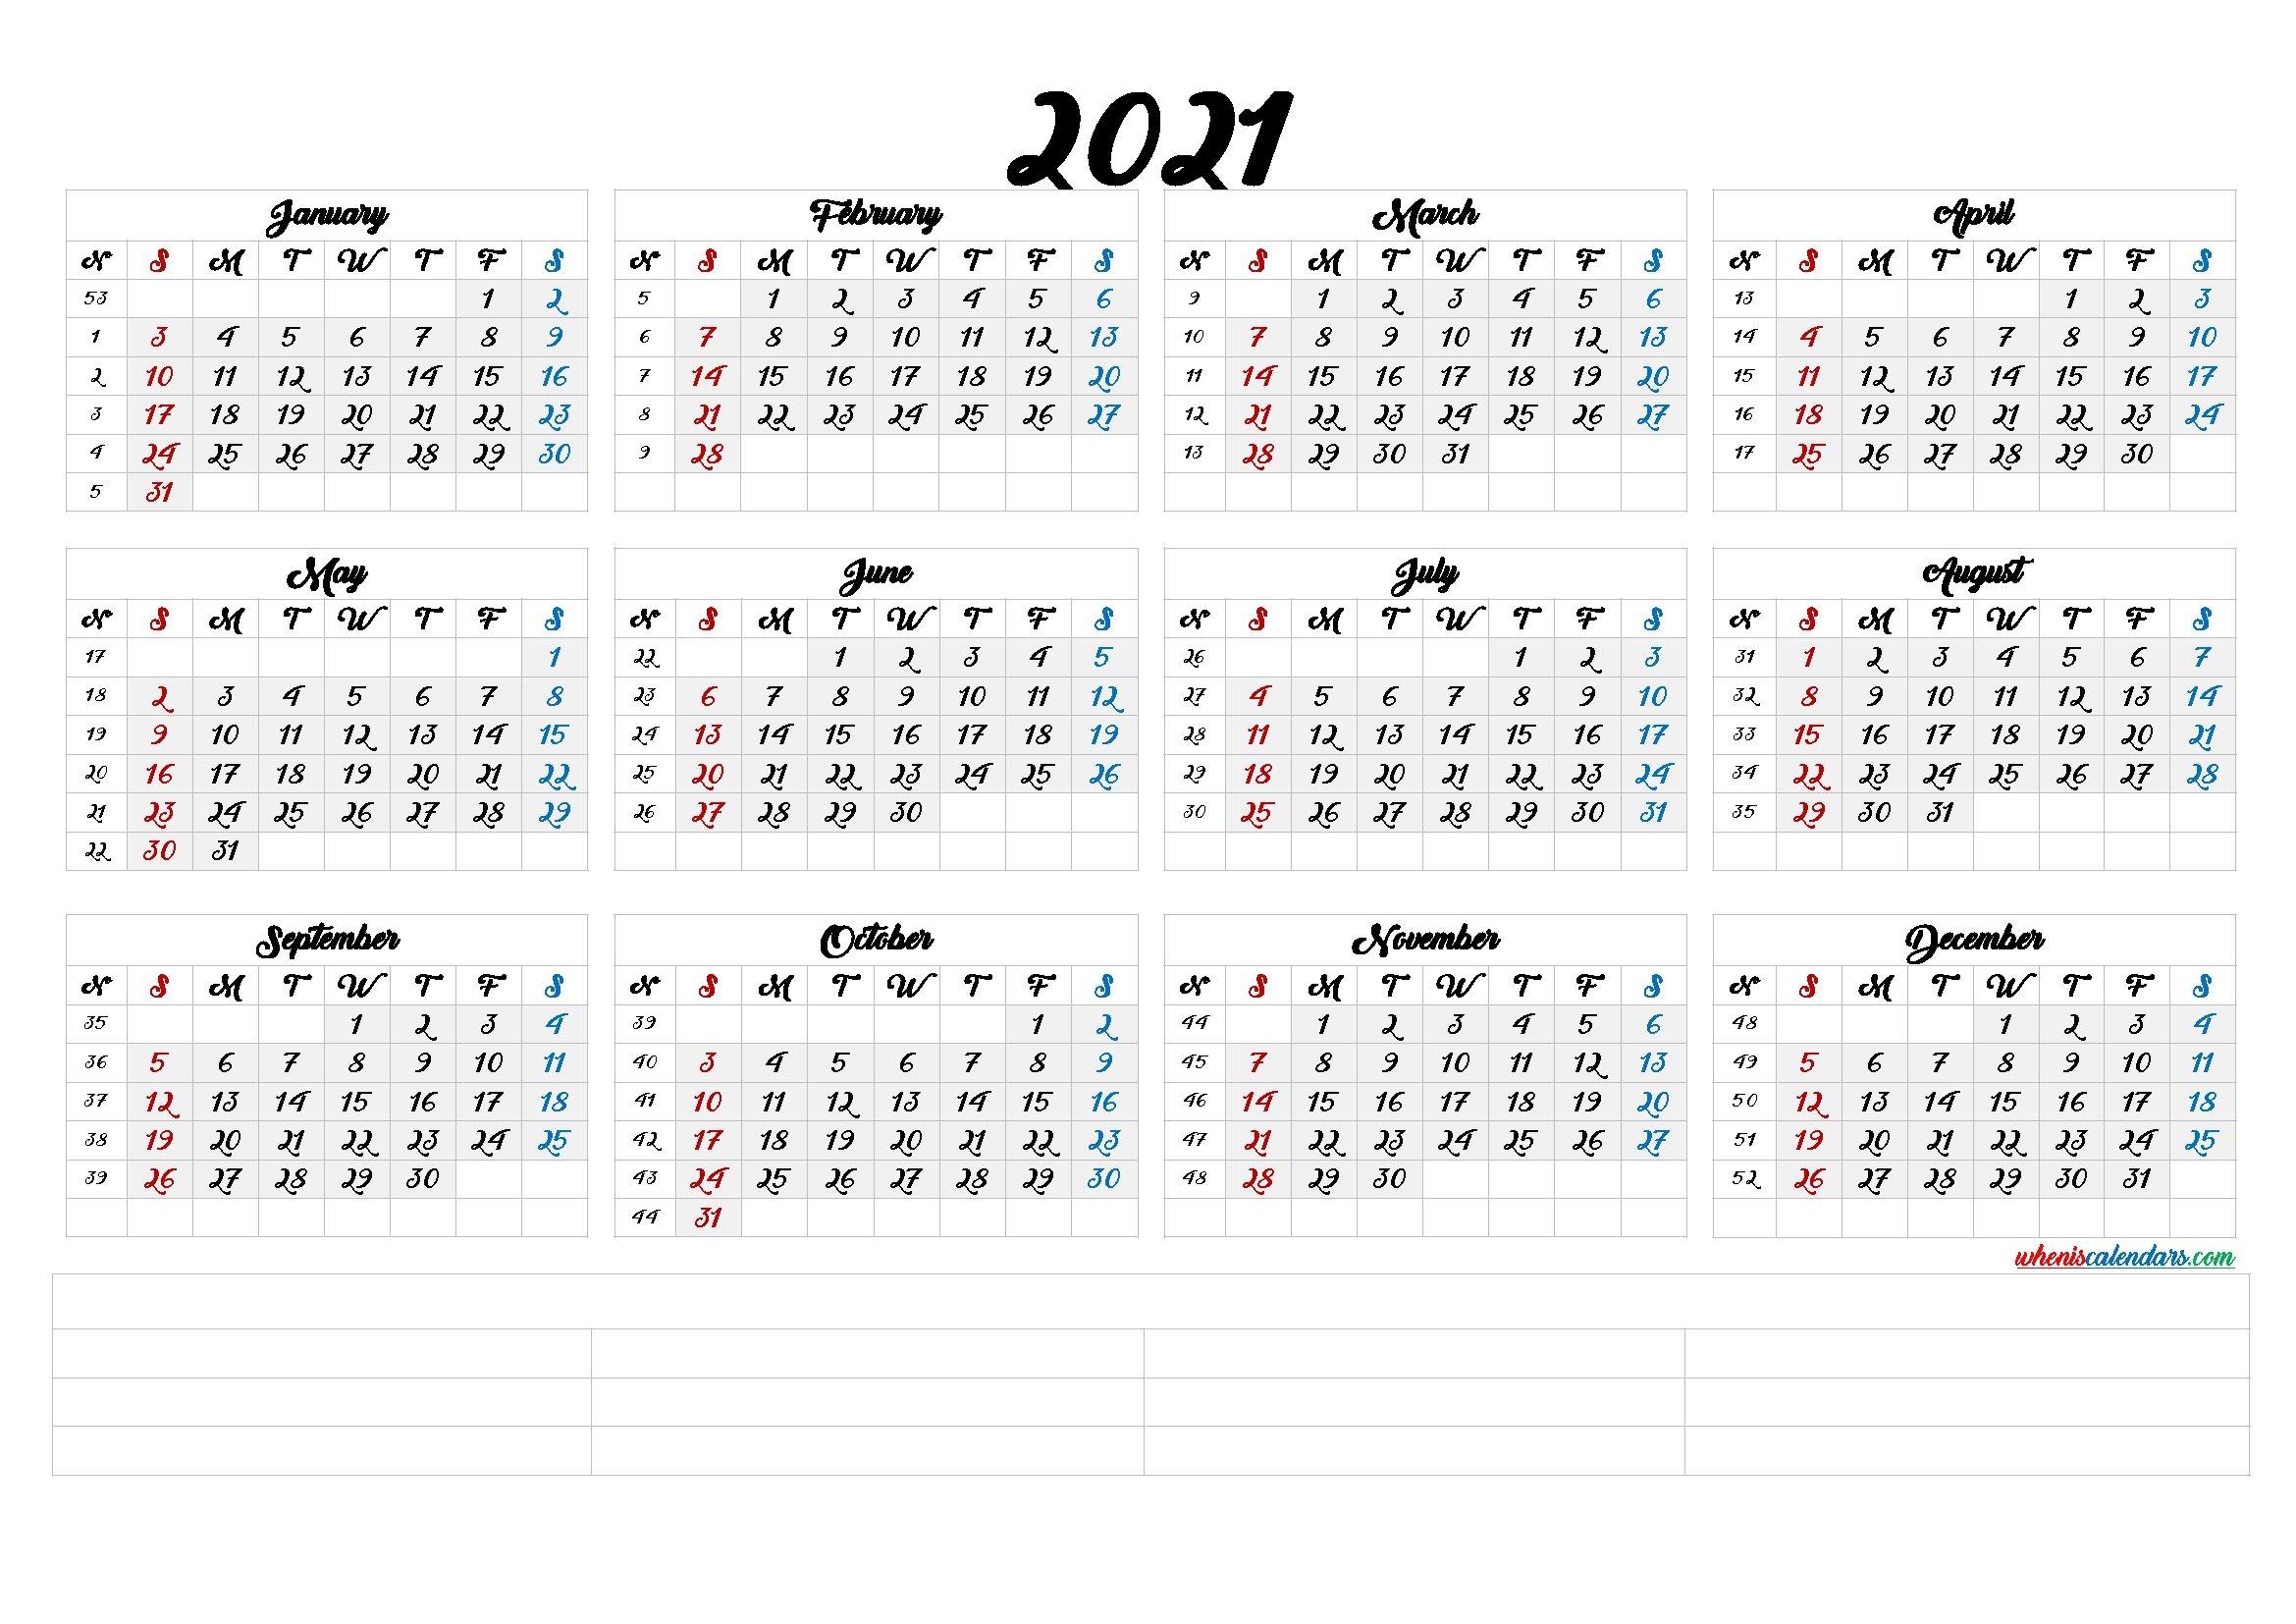 2021 annual calendar printable calendarex